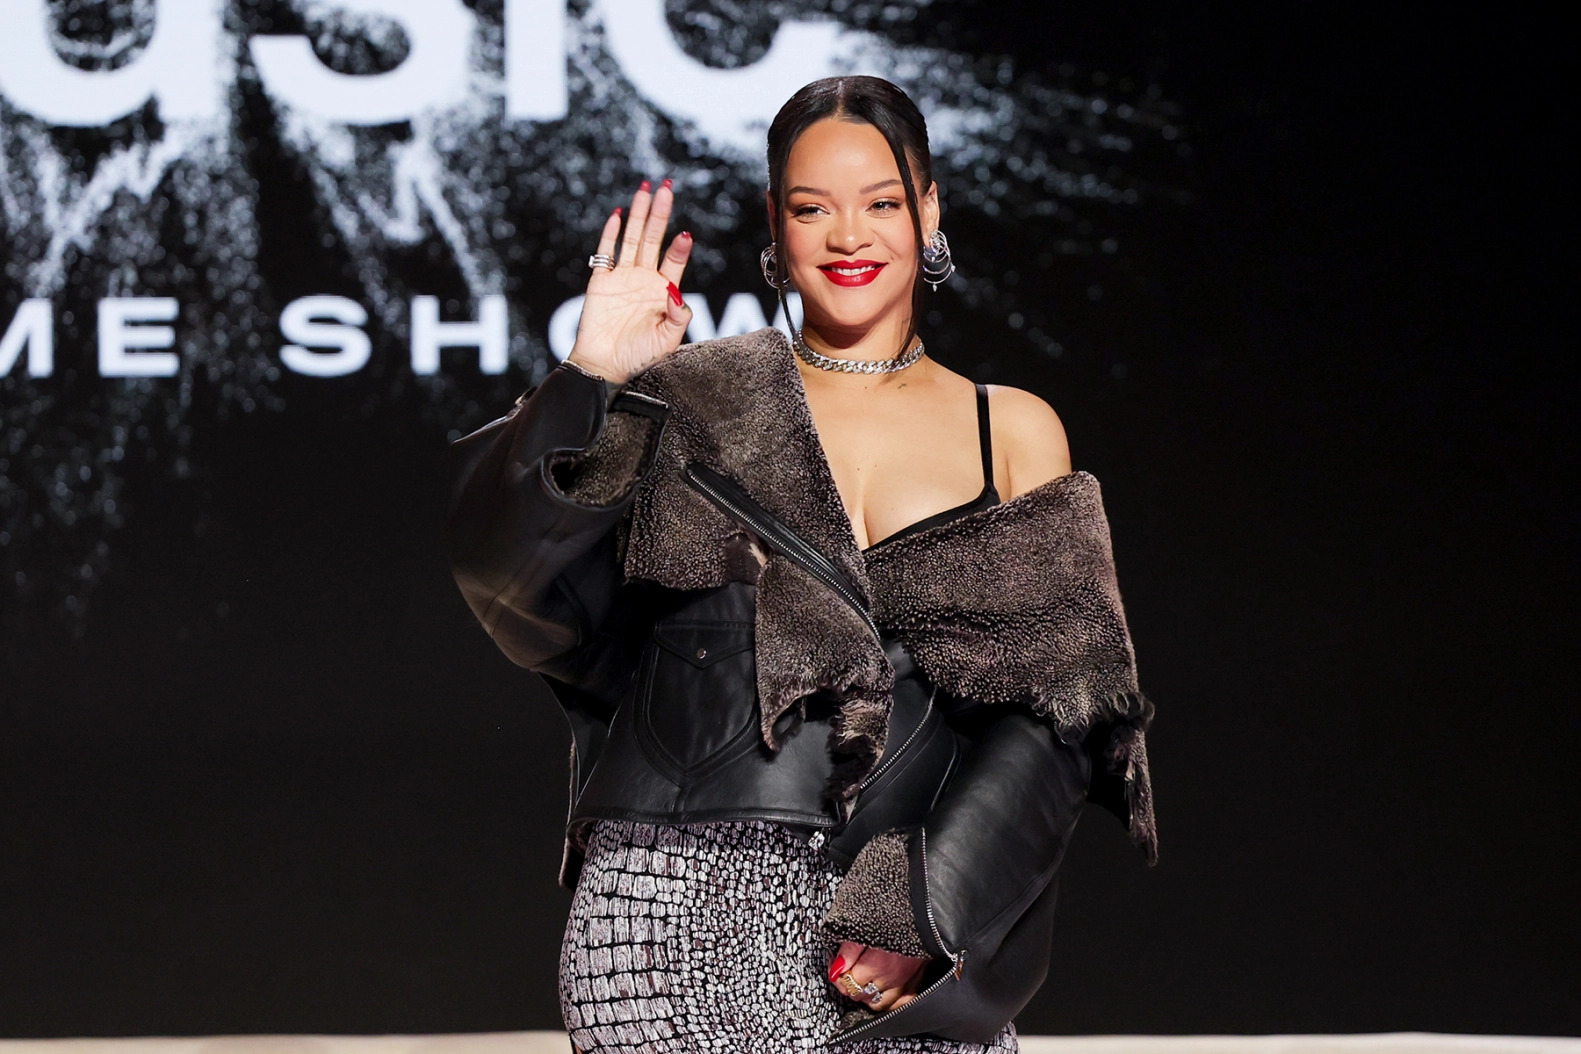 Rihanna rompe nuevo récord en Spotify (aún sin lanzar su nuevo álbum)